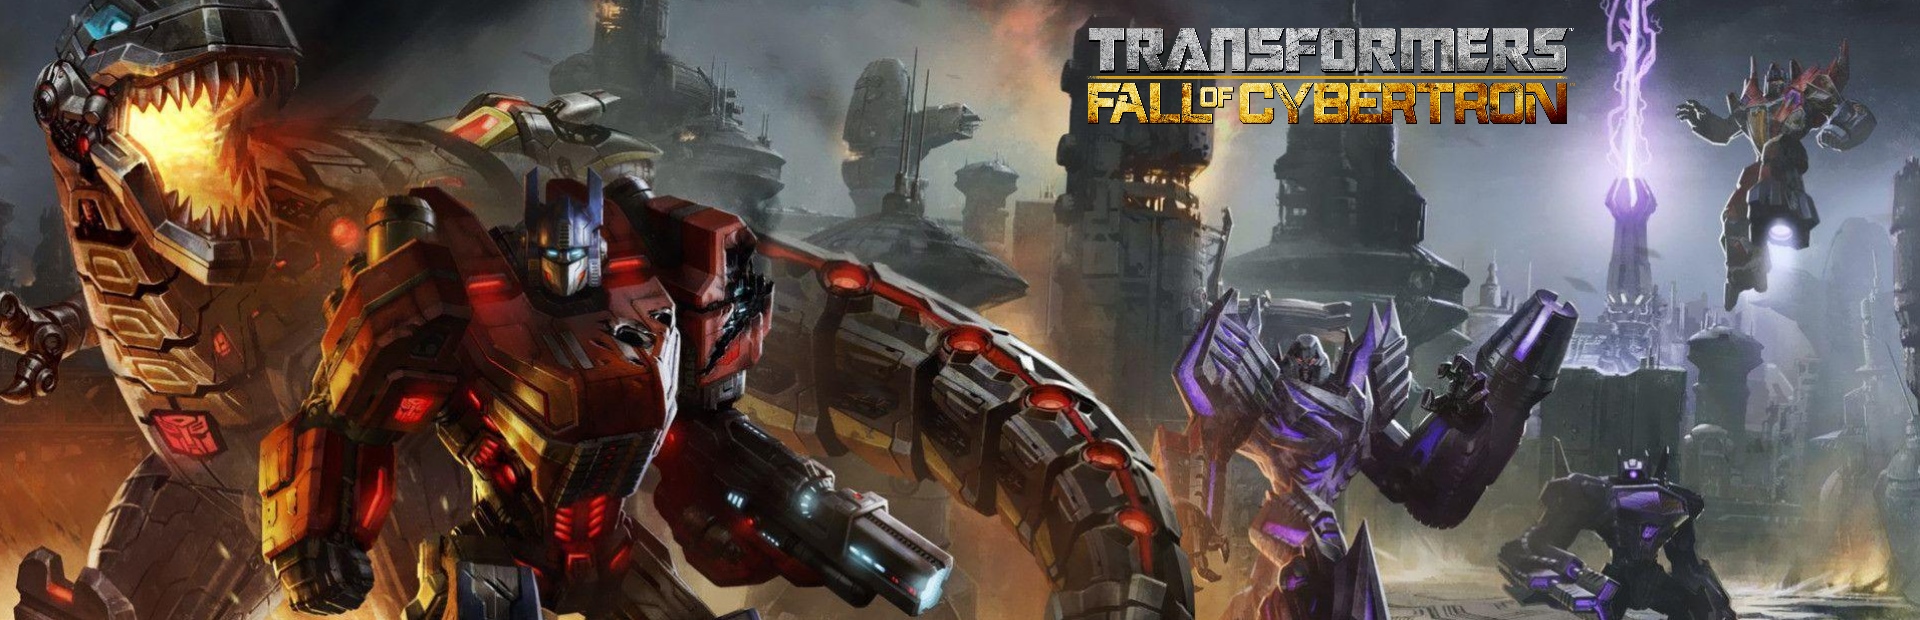 دانلود بازی Transformers: Fall of Cybertron برای کامپیوتر | گیمباتو